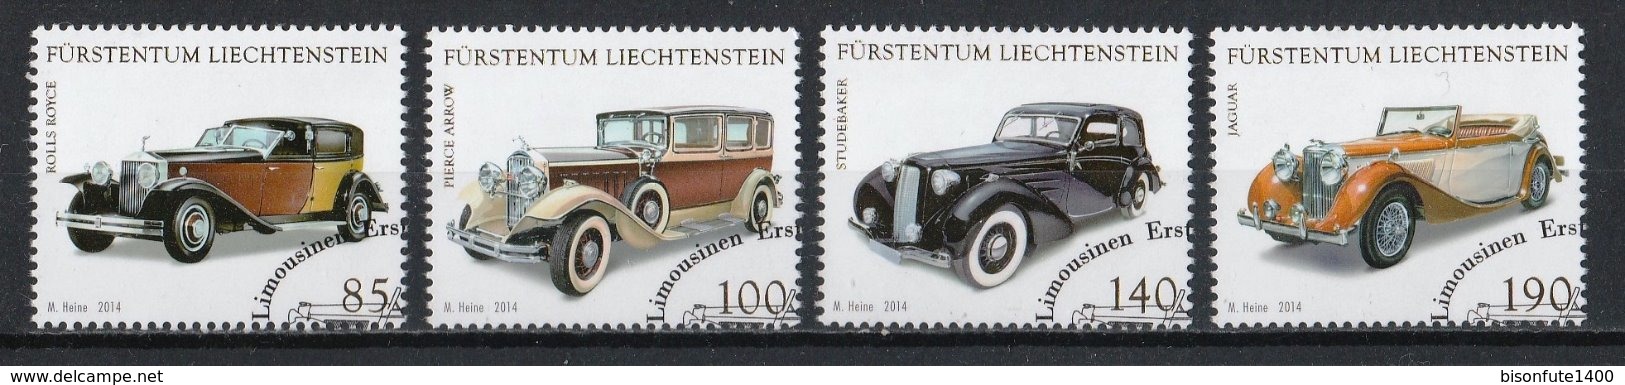 Liechtenstein 2014 : Timbres Yvert & Tellier N° 1666 - 1667 - 1668 Et 1669 Avec Oblit. Rondes. - Oblitérés